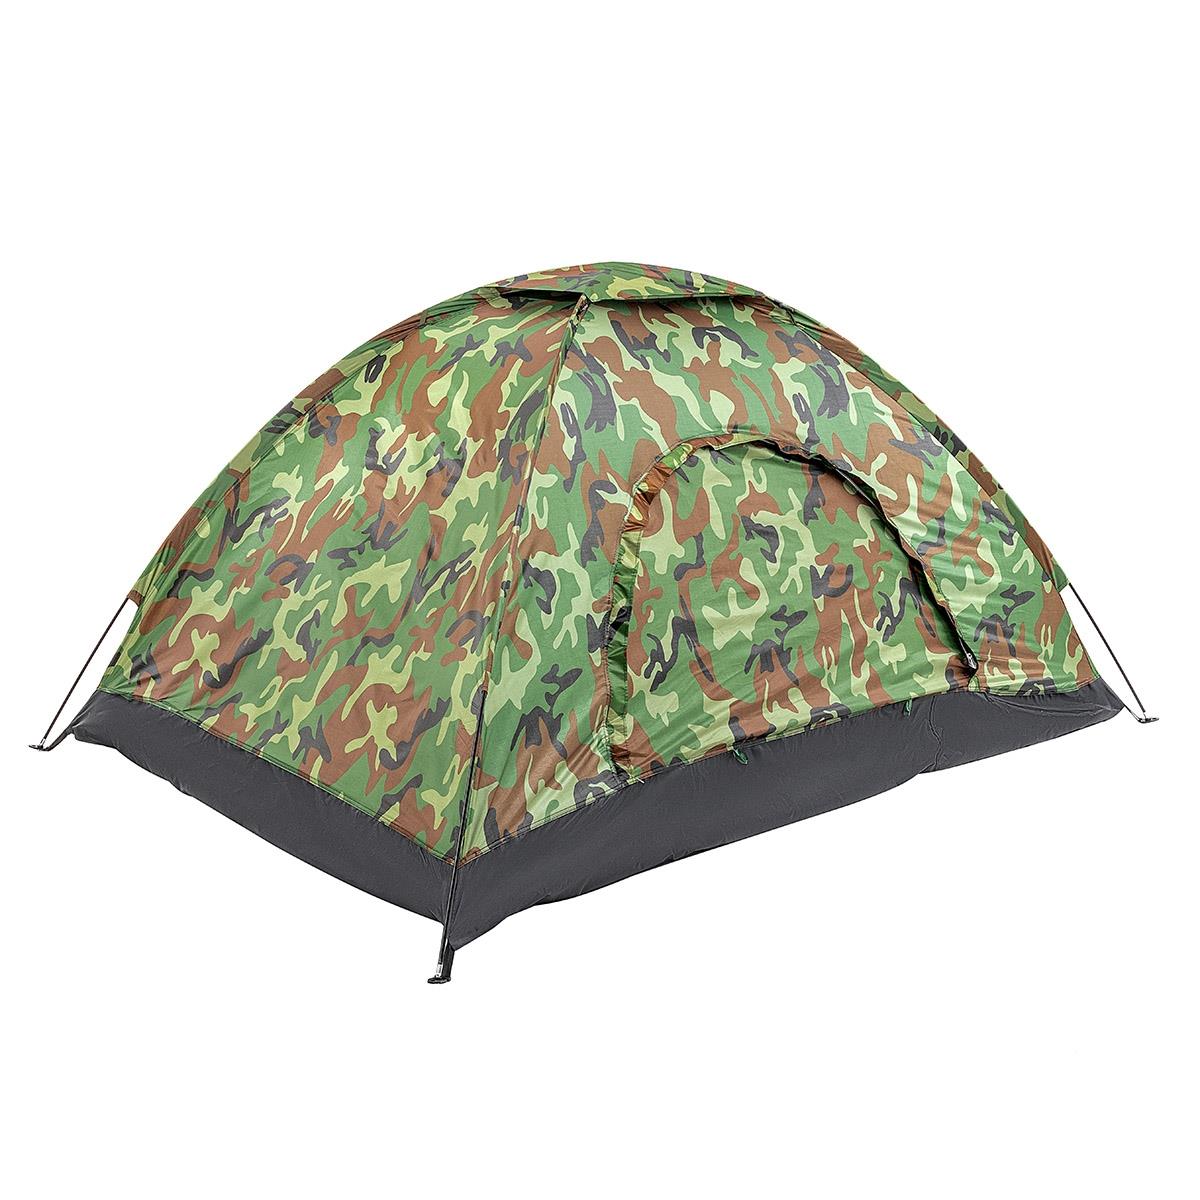 Палатка 2-х местная однослойная КМФ (PR-FX-D07) палатка шатер trimm shelters sunshield песочный 45571